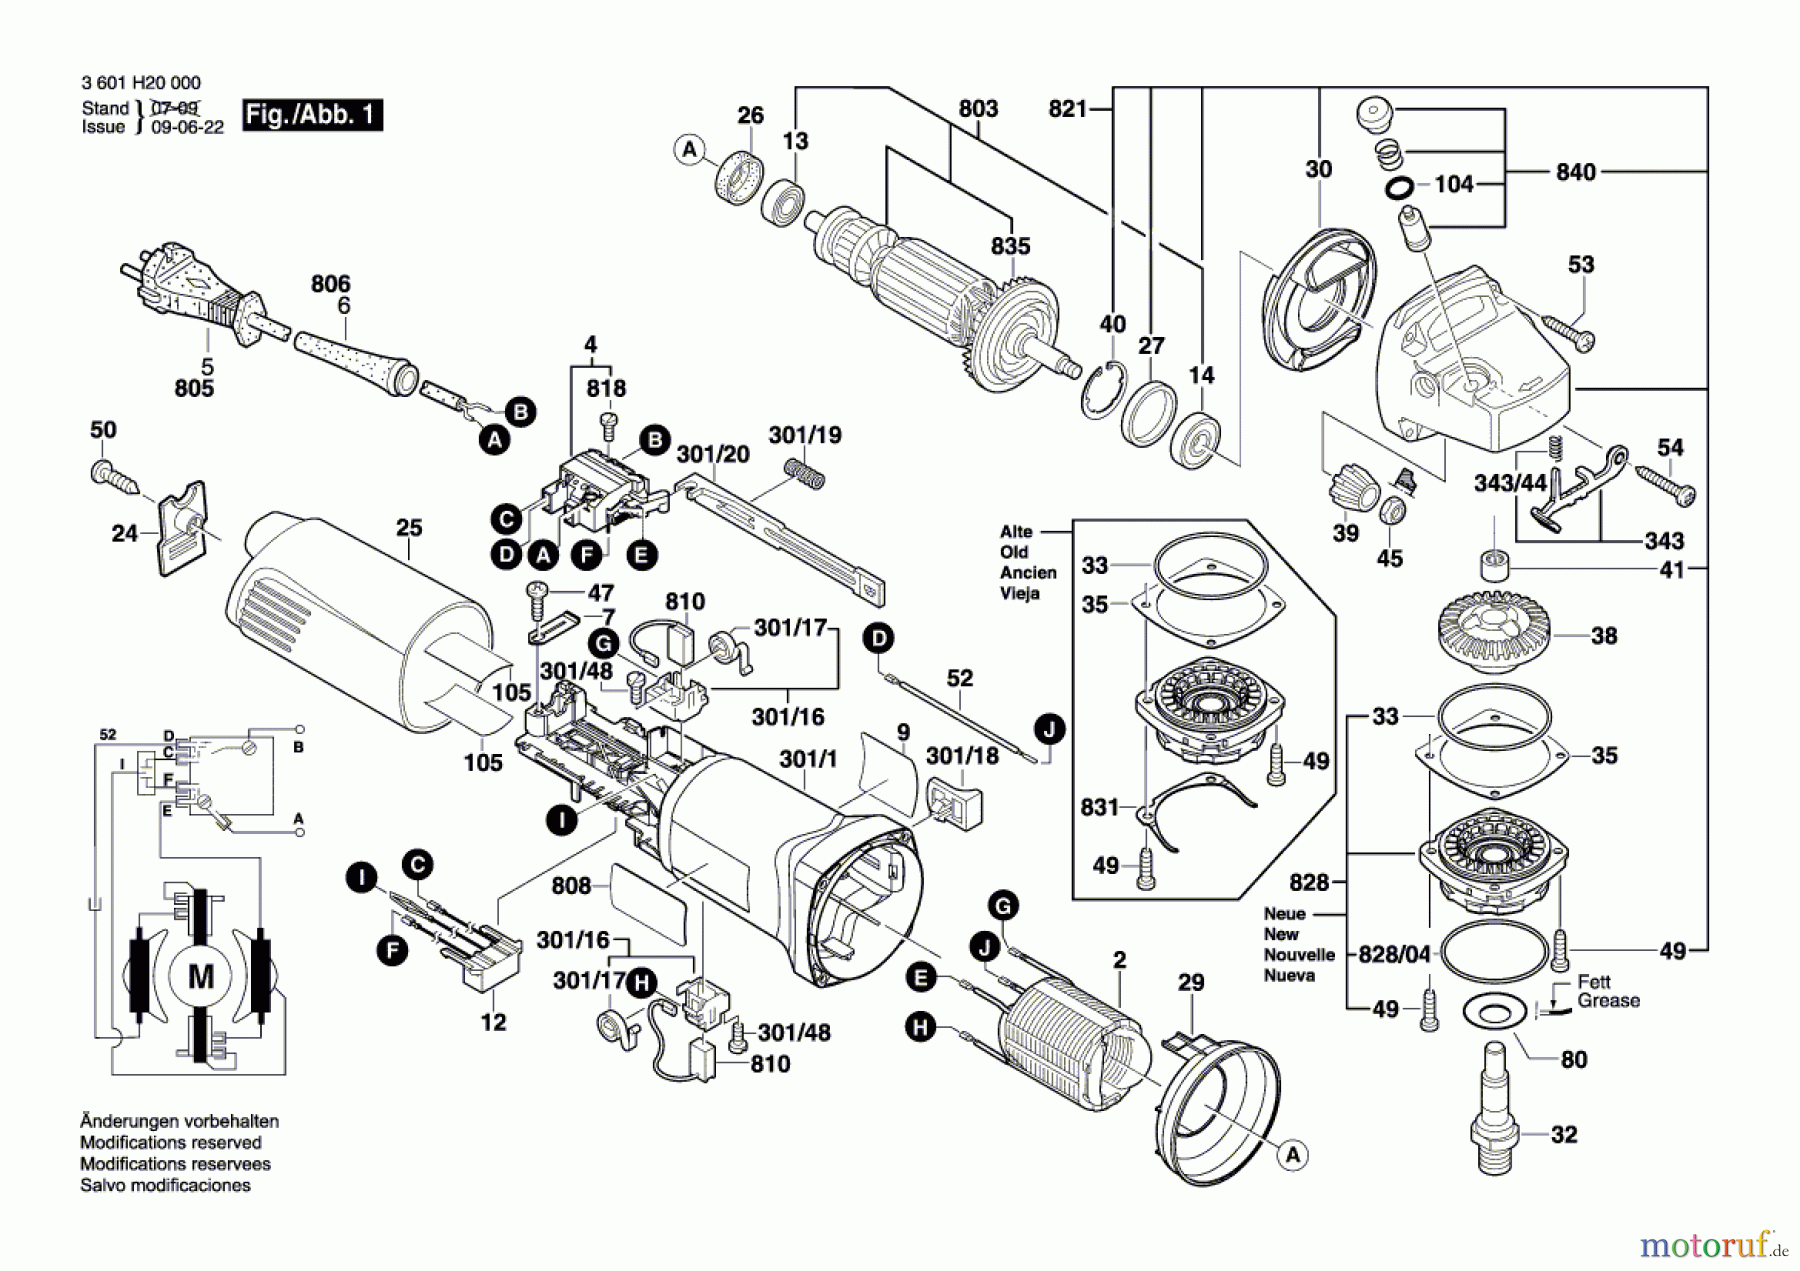  Bosch Werkzeug Winkelschleifer GWS 8-115 Seite 1